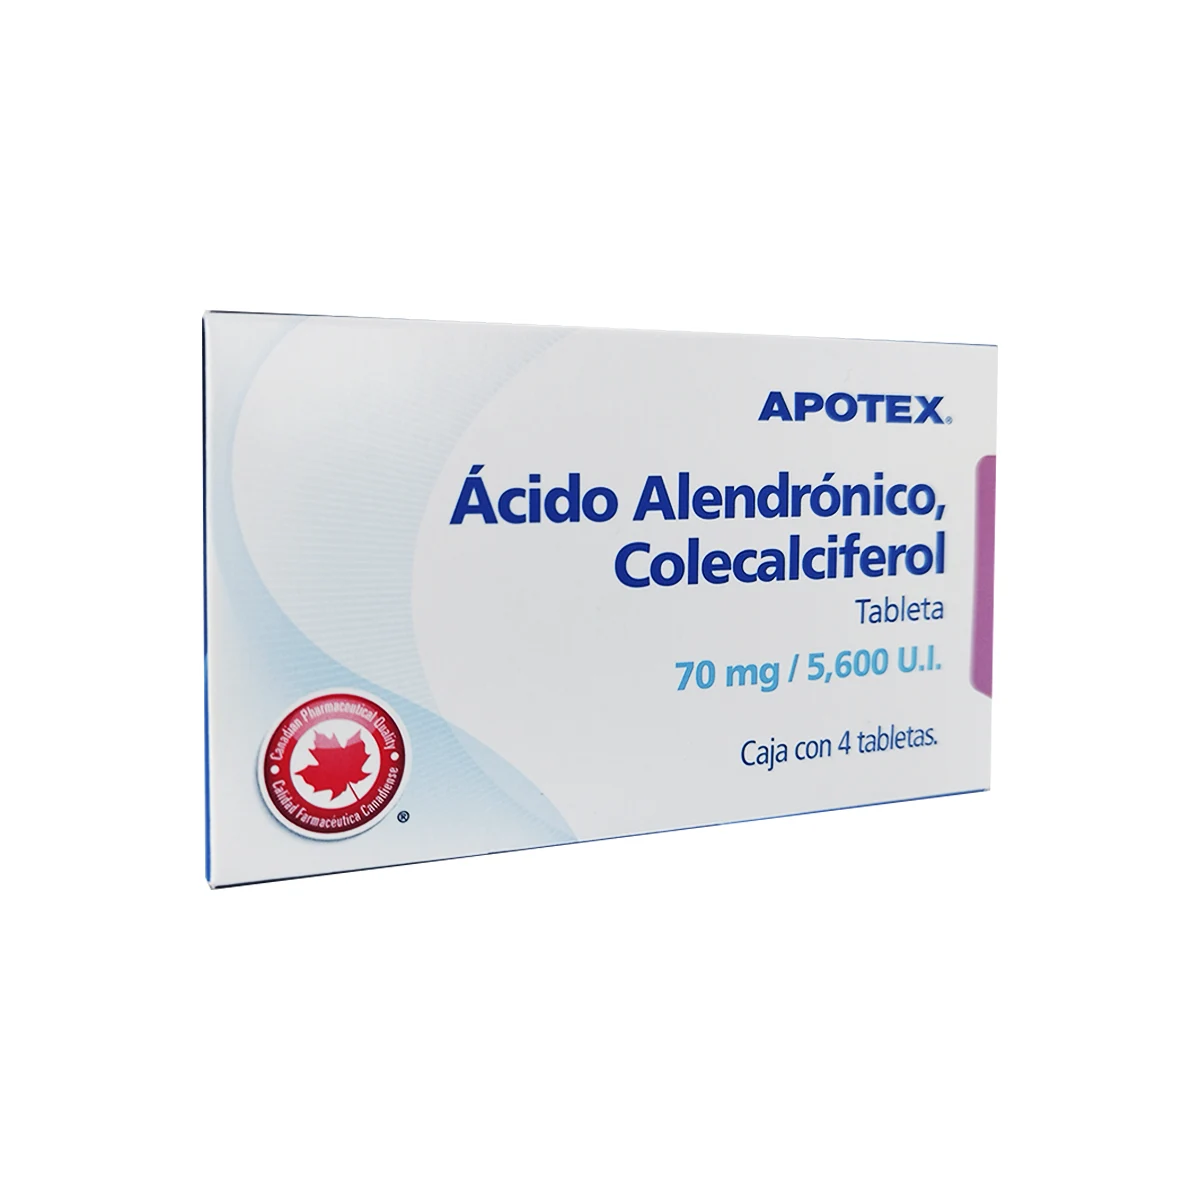 7501277030620 1 acido elendronico colecalciferol acido alendronico - colecalciferol 70 mg/5600 ui tableta 4 tableta(s)